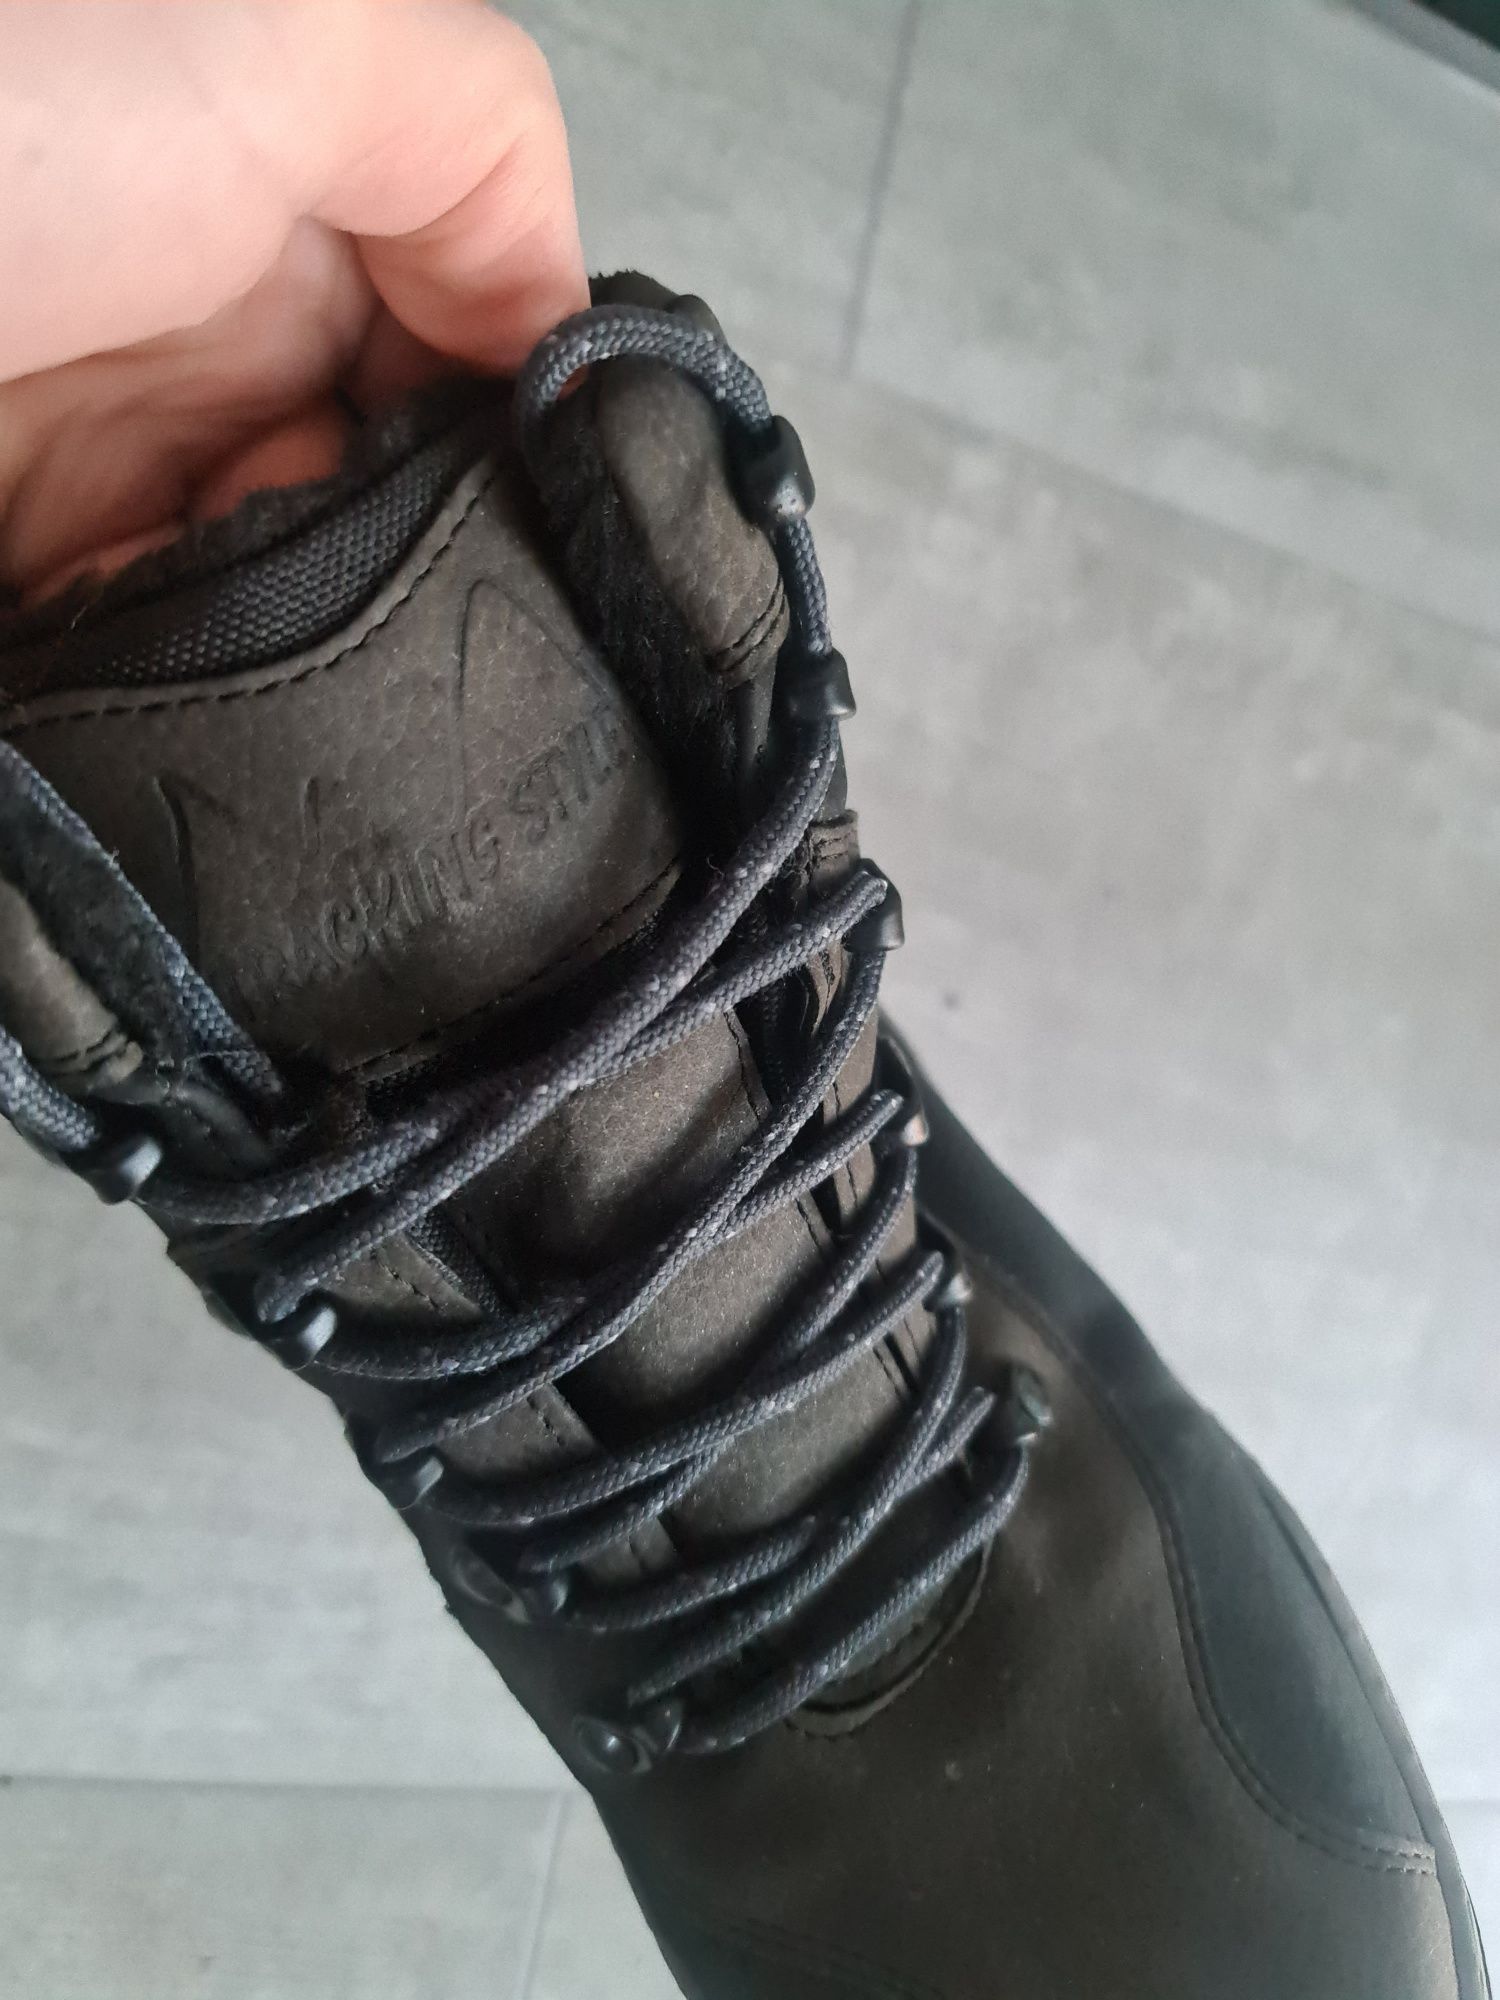 Korneck buty górskie trekingowe r. 38 wkładka 24,5 cm